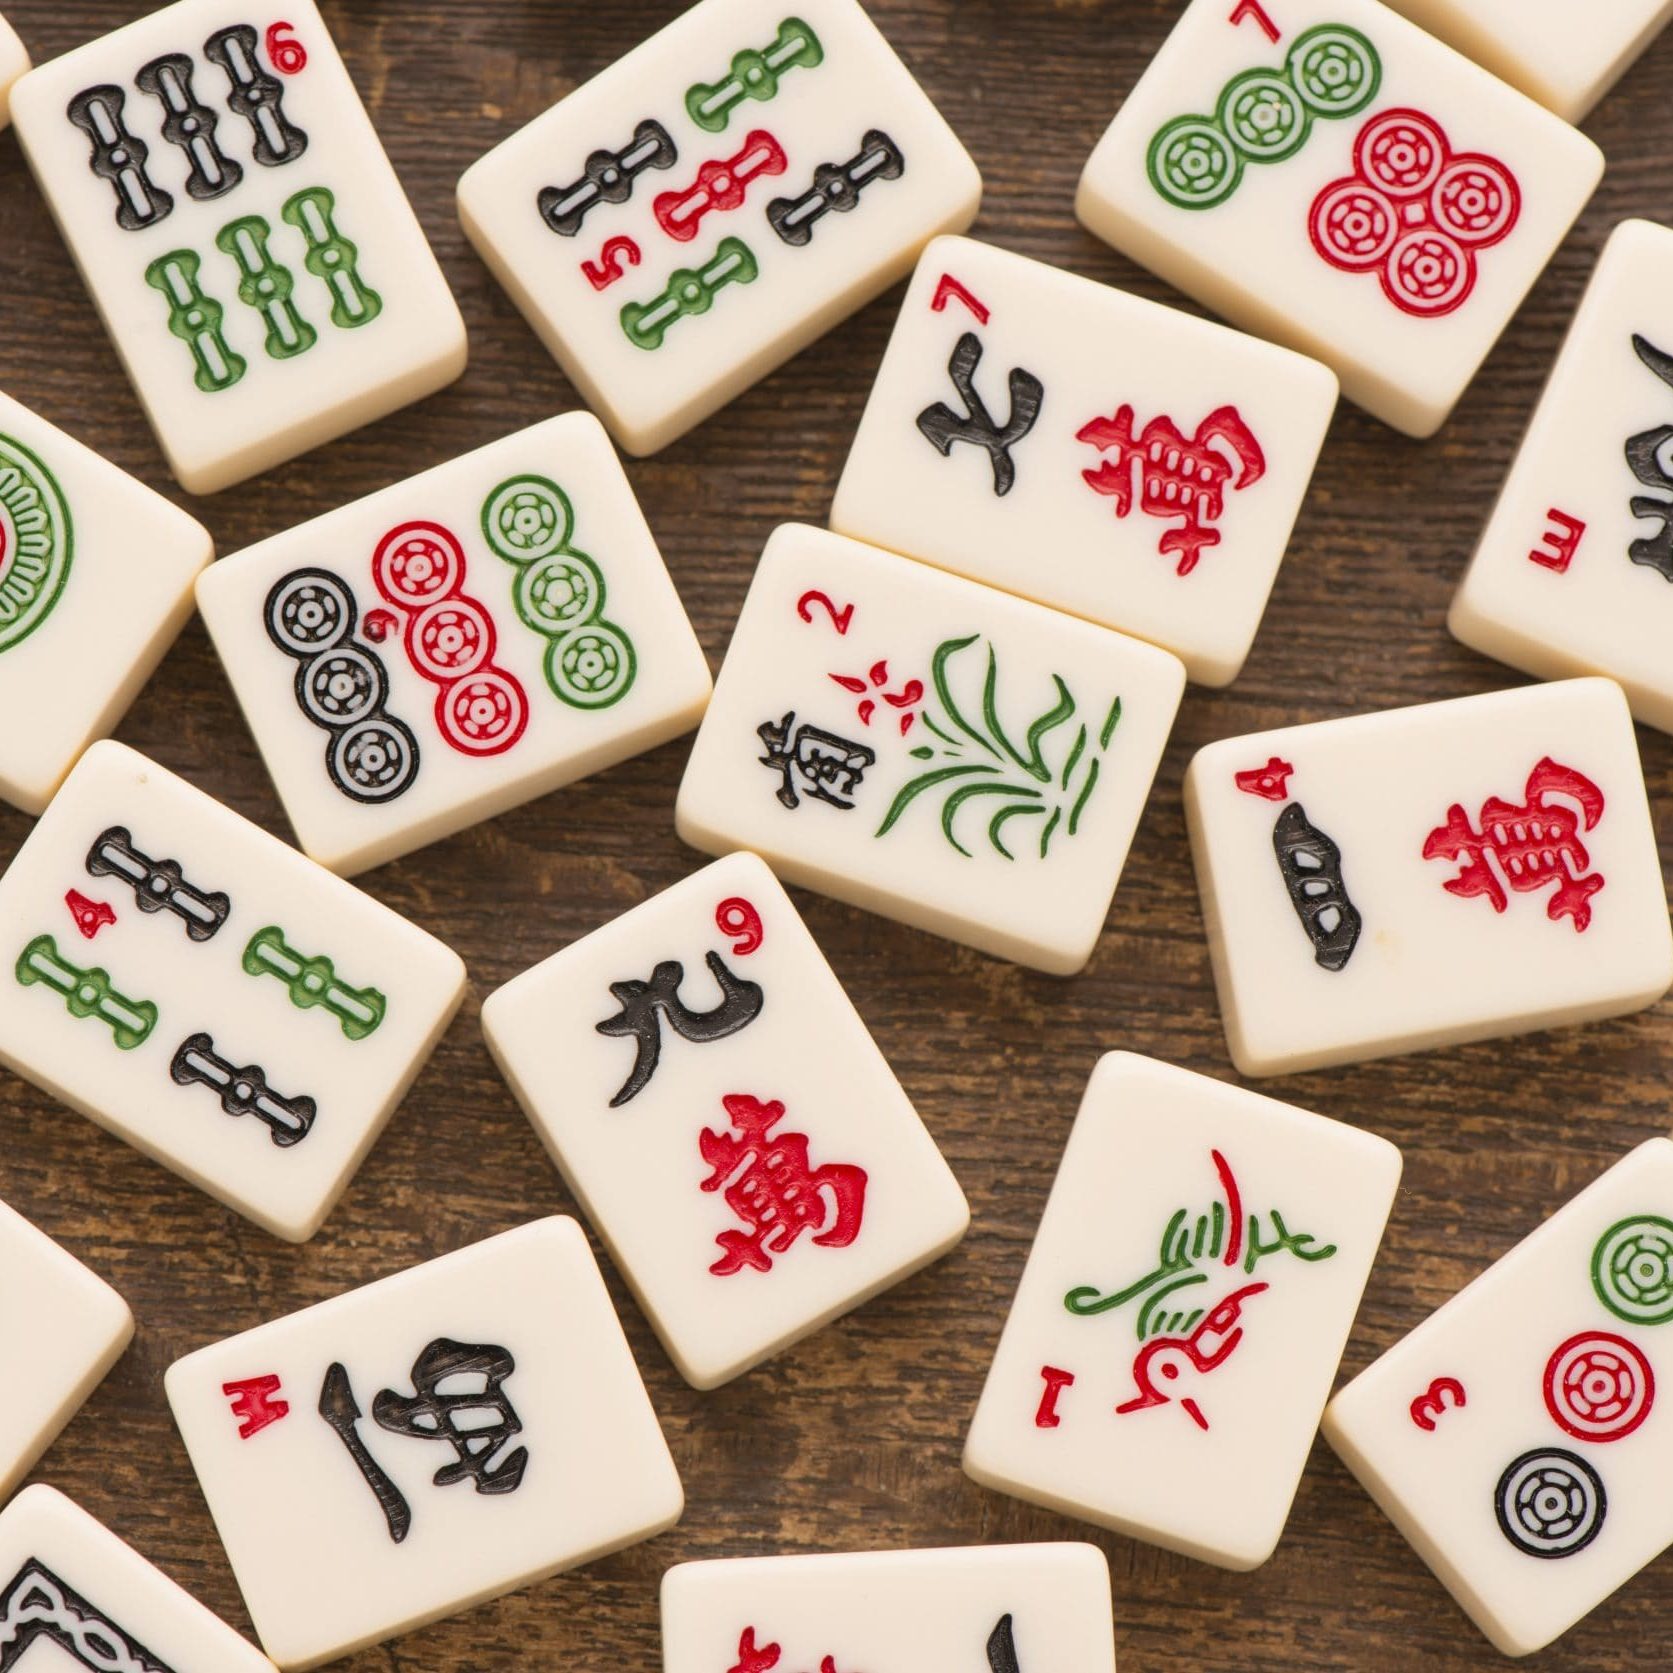 Mahjong Players Club